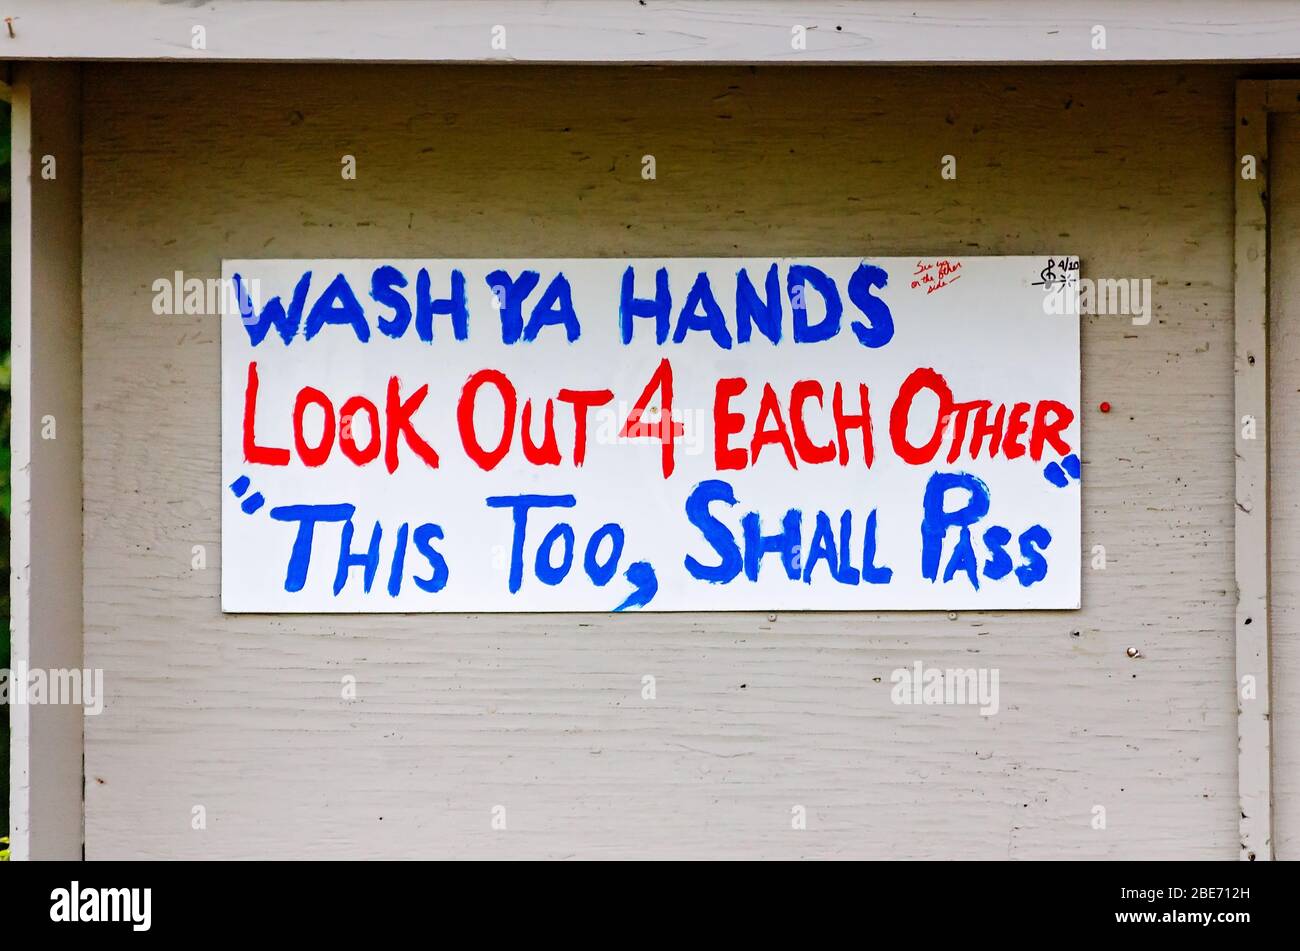 Ein selbstgemachtes Schild erinnert die Menschen im Medal of Honor Park daran, sich während der COVID-19 Pandemie in Mobile, Alabama, die Hände zu waschen und aufeinander zu achten. Stockfoto